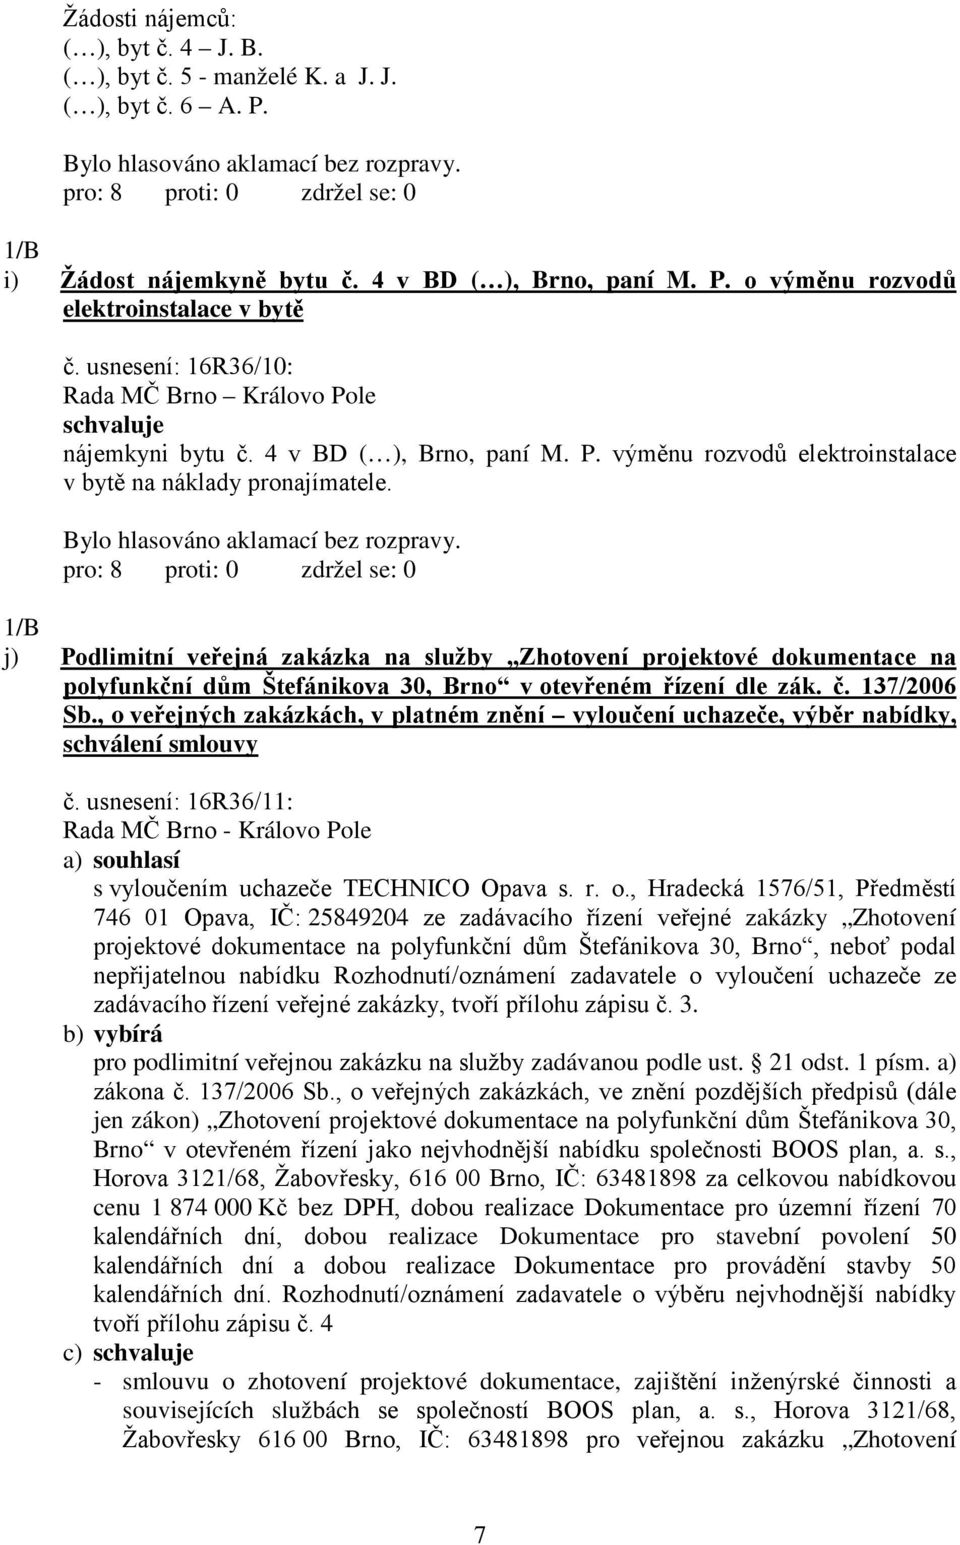 1/B j) Podlimitní veřejná zakázka na služby Zhotovení projektové dokumentace na polyfunkční dům Štefánikova 30, Brno v otevřeném řízení dle zák. č. 137/2006 Sb.